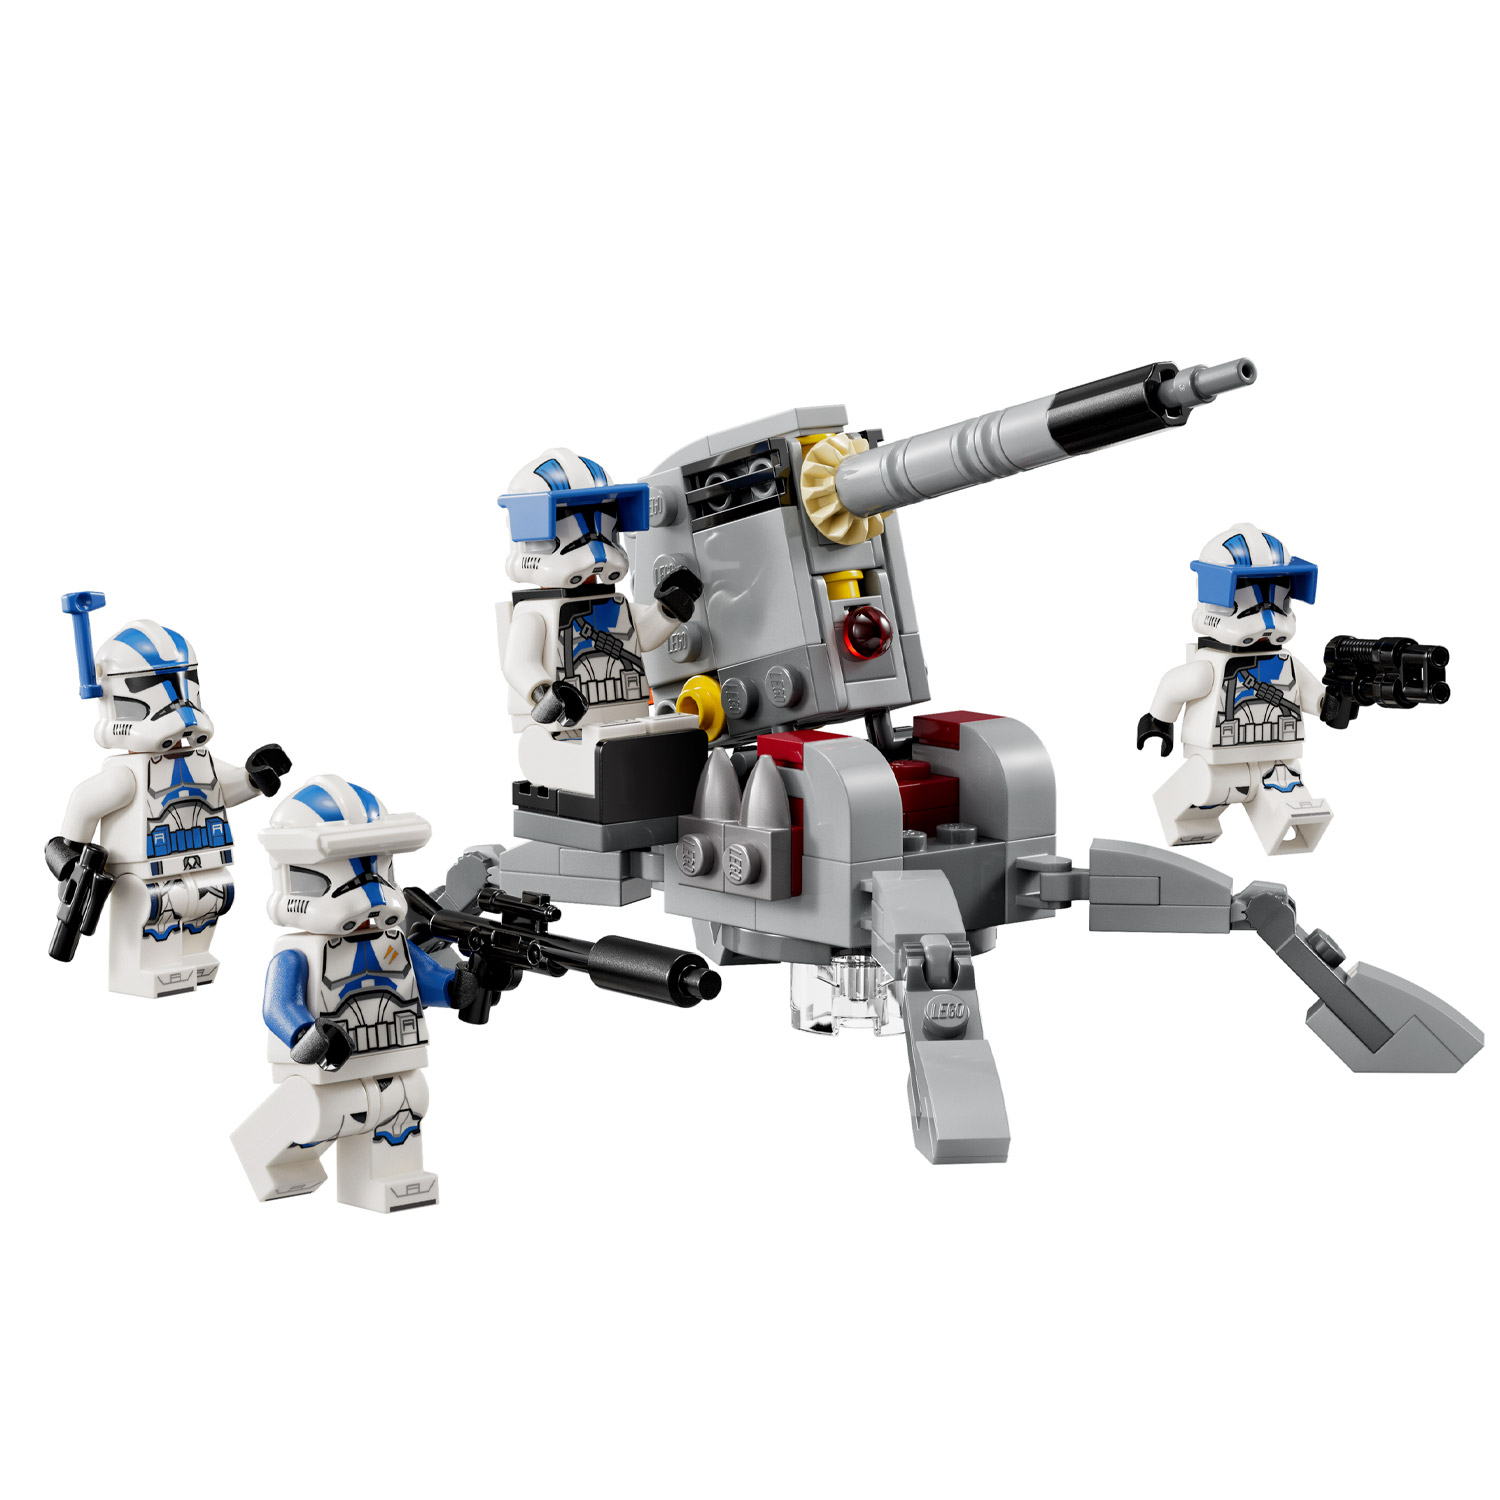 LEGO Star Wars 75345 Pack de combat des 501èmes soldats clones